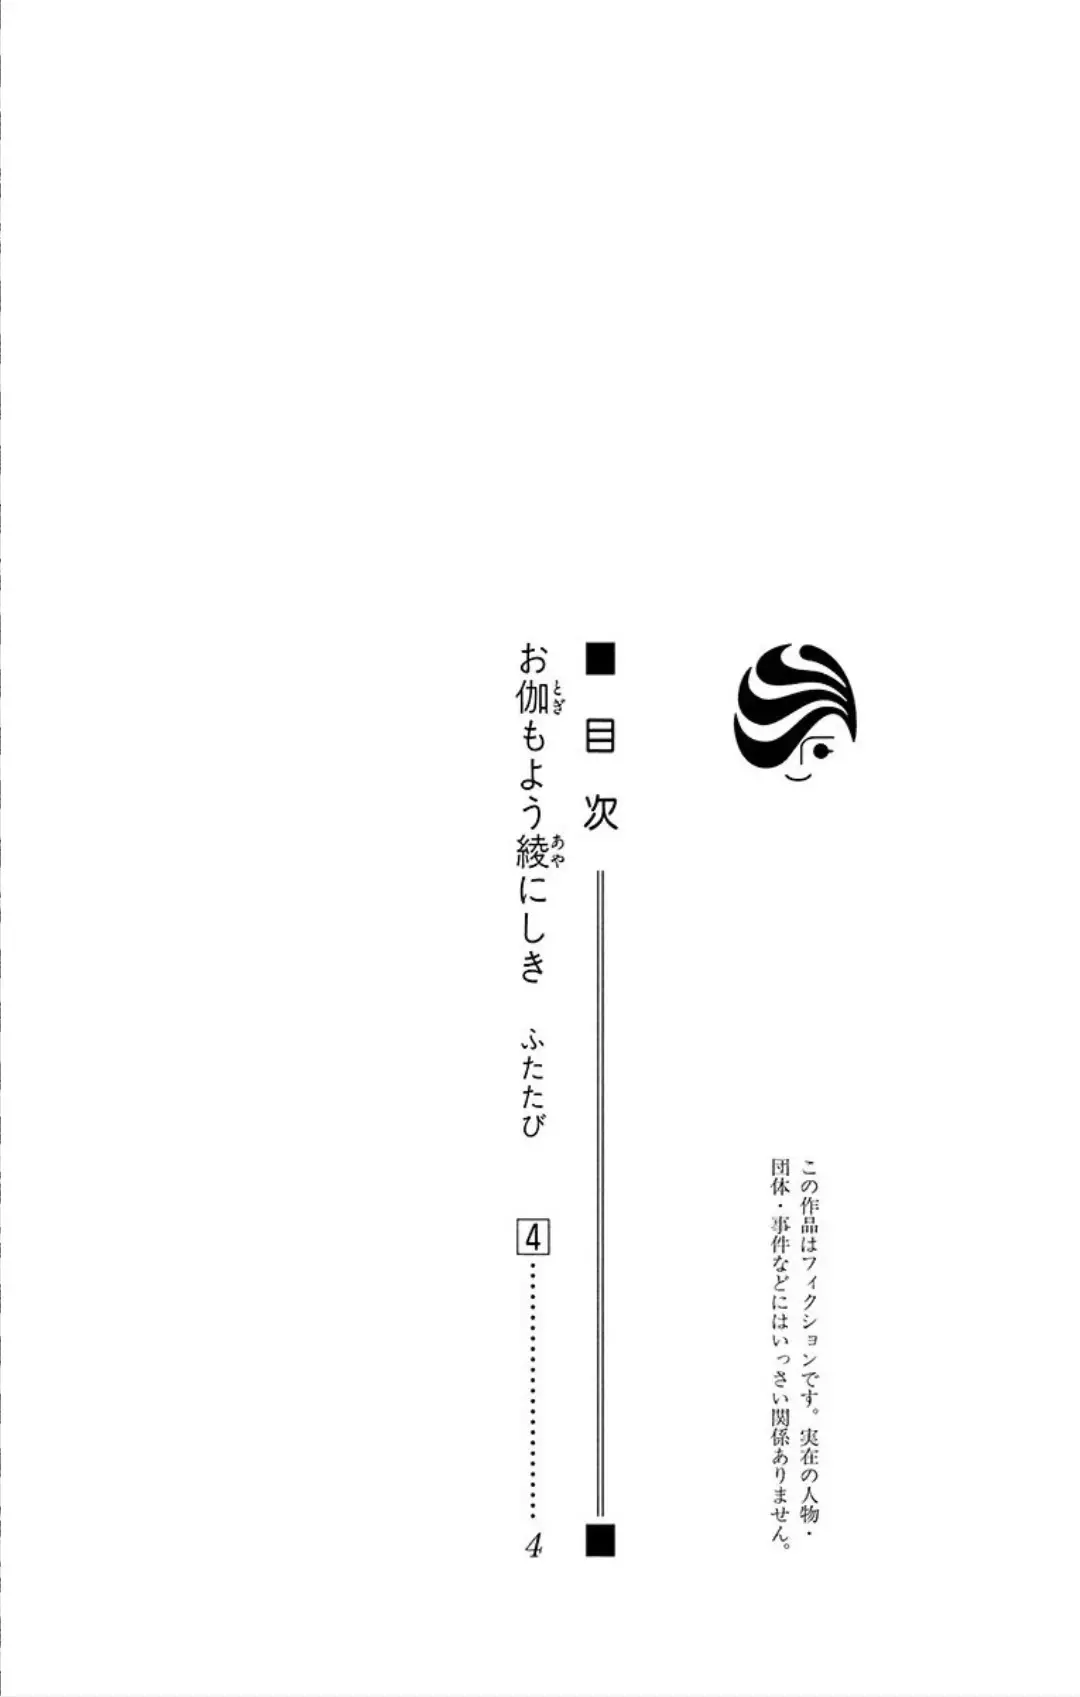 Otogimoyou Ayanishiki Futatabi - 23 page 3-3e05f3ca